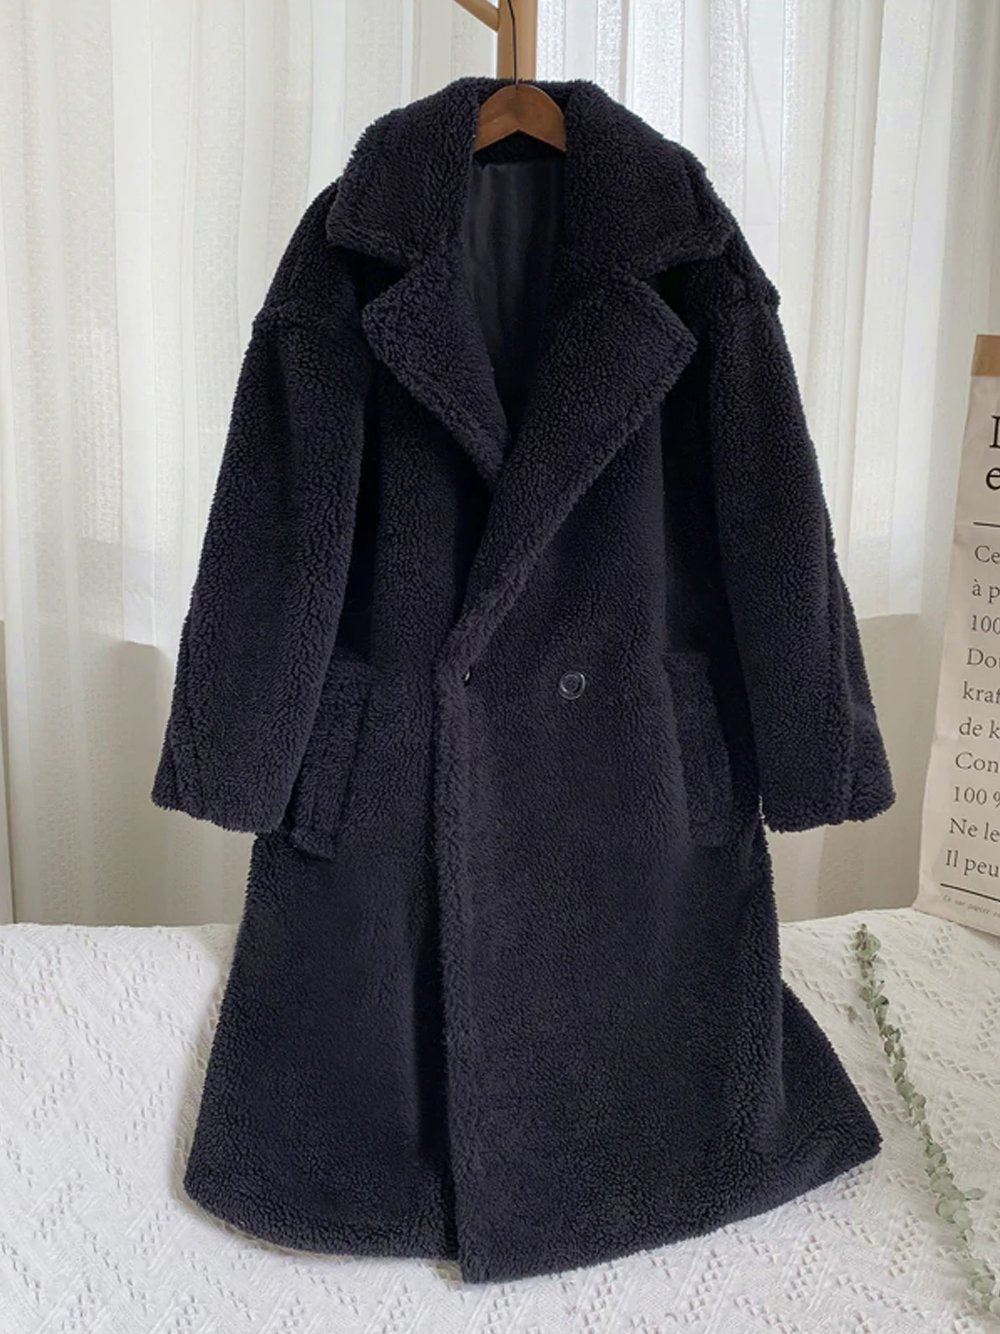 SIMBO Faux Fur Teddy Bear Coat